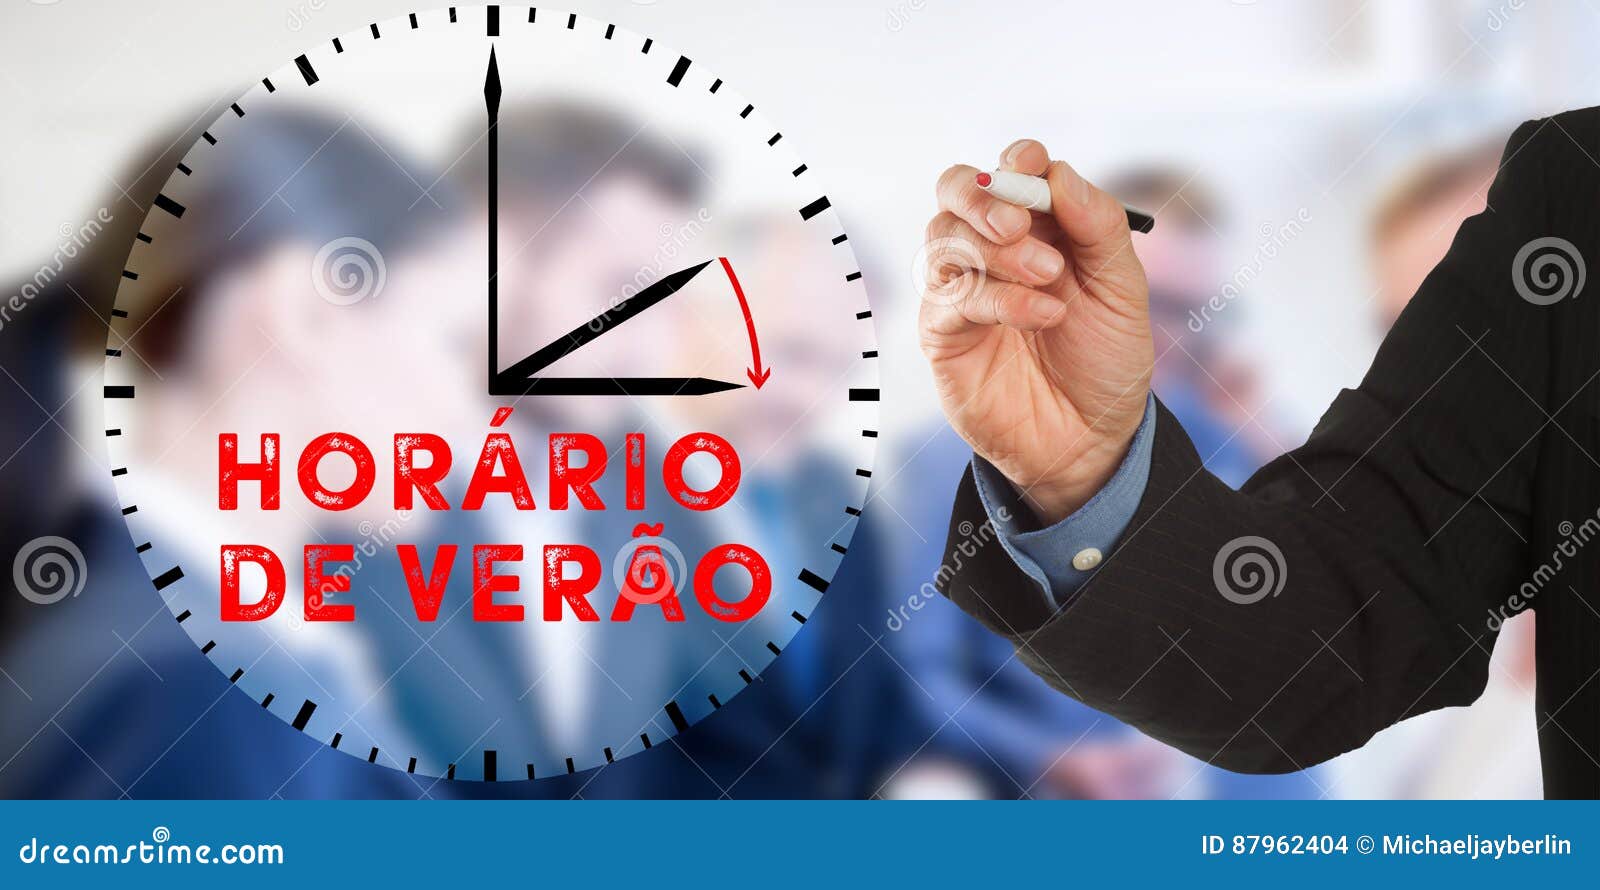 horario de verao, portuguese daylight saving time, business man